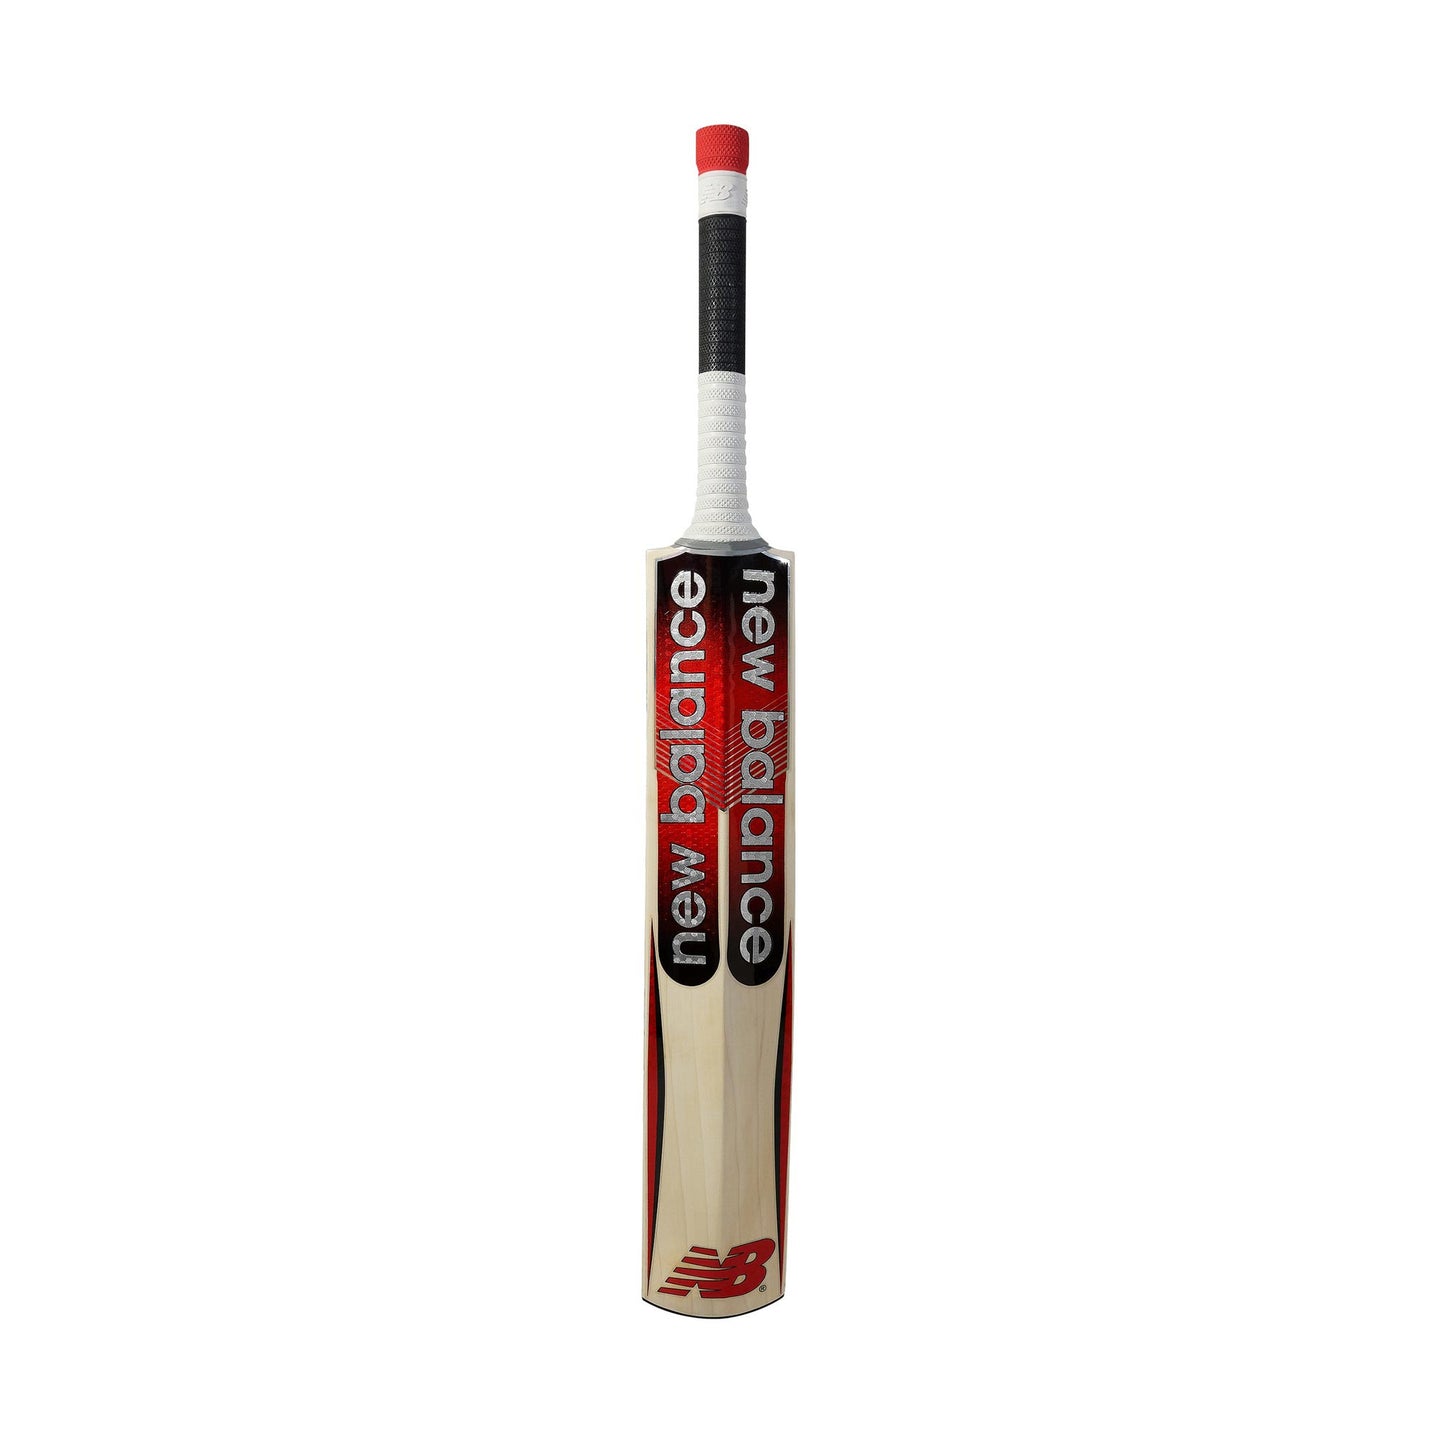 New Balance TC560 Junior Cricket Bat